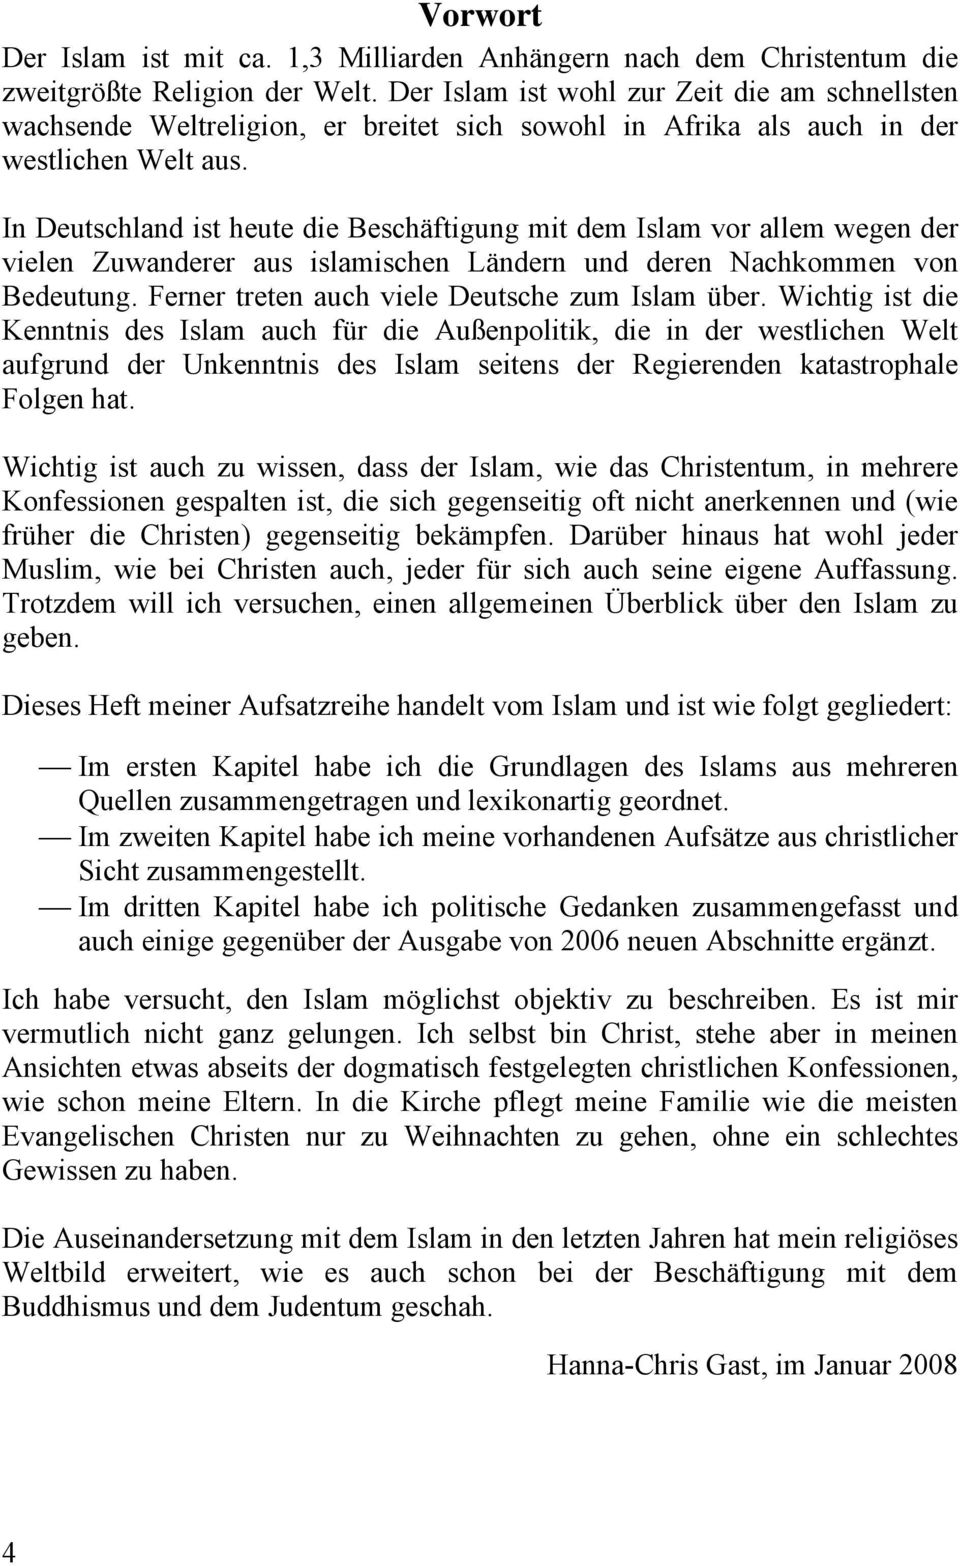 In Deutschland ist heute die Beschäftigung mit dem Islam vor allem wegen der vielen Zuwanderer aus islamischen Ländern und deren Nachkommen von Bedeutung.